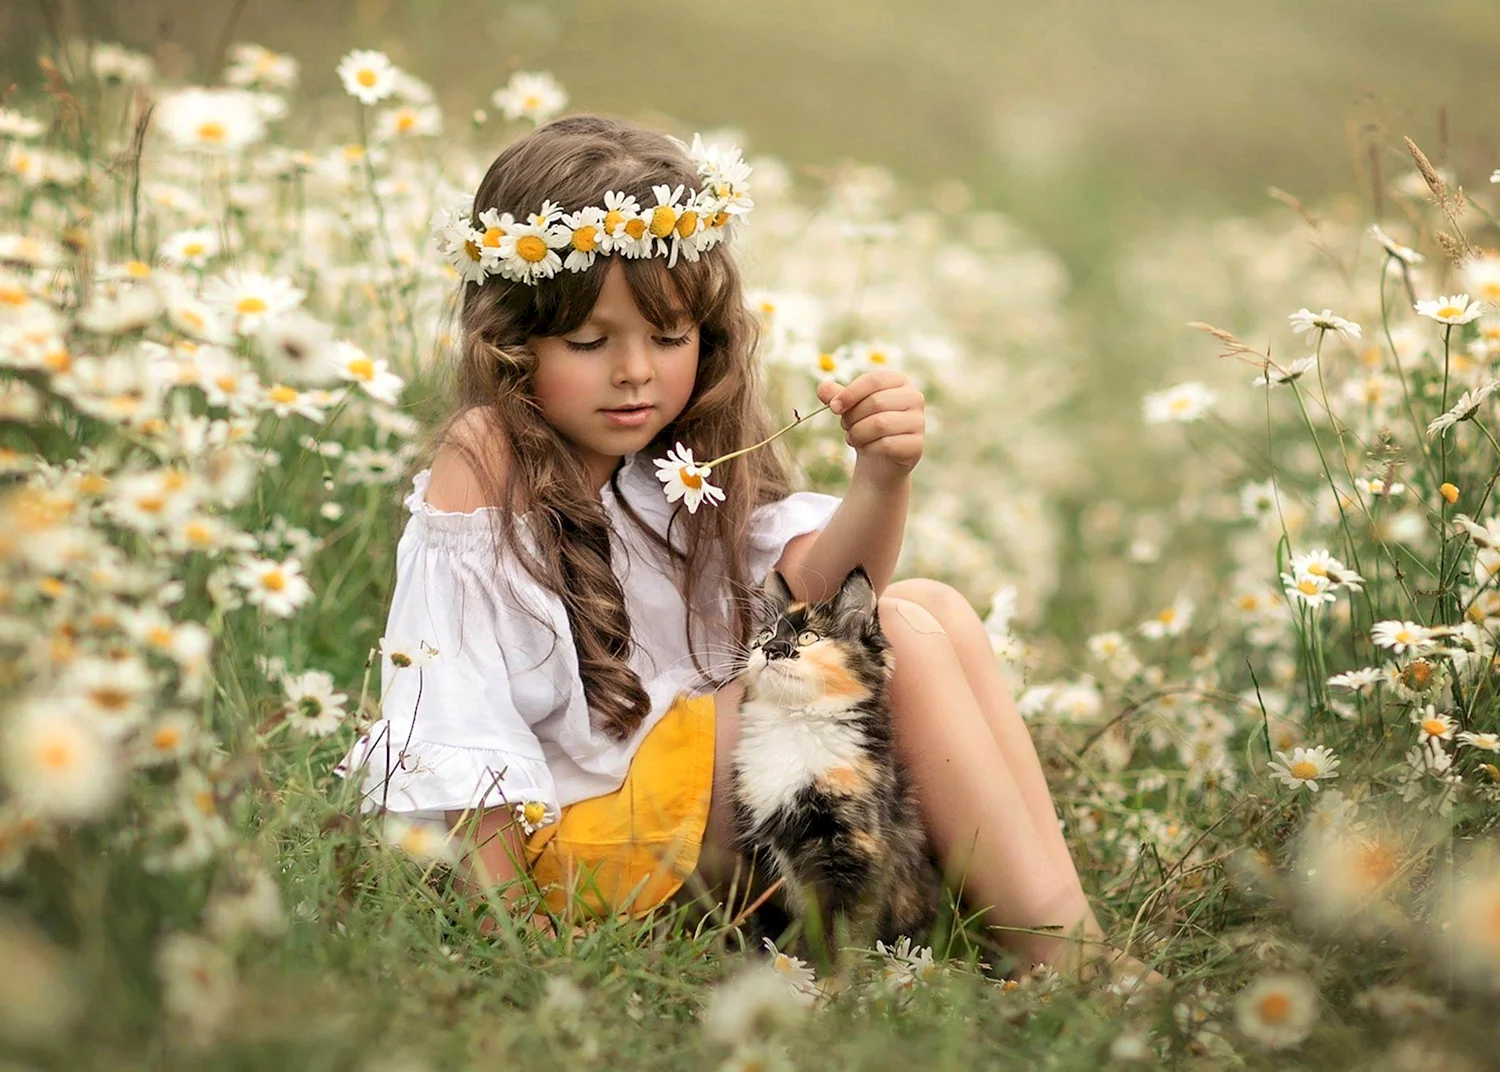 Девочка в венке из цветов